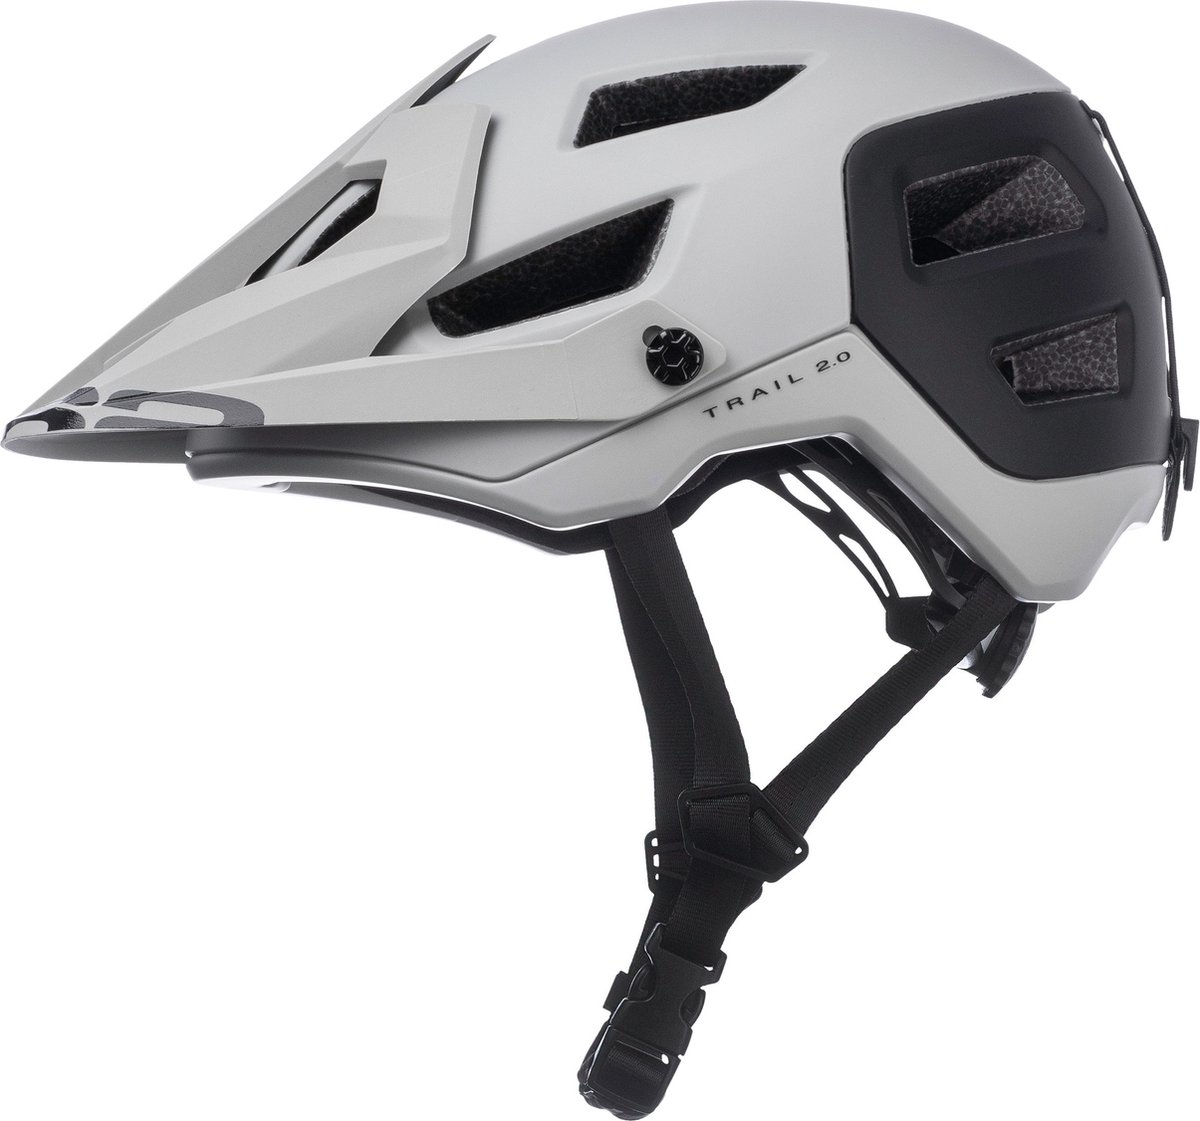 Mountainbike fietshelm - Met verstelbaar zonnevizier - Extra bescherming op achterhoofd - verstelbaar maat systeem - Voor Dames en Heren - R2 - Trail Fietshelm - Beige - Maat L (8595627141622)